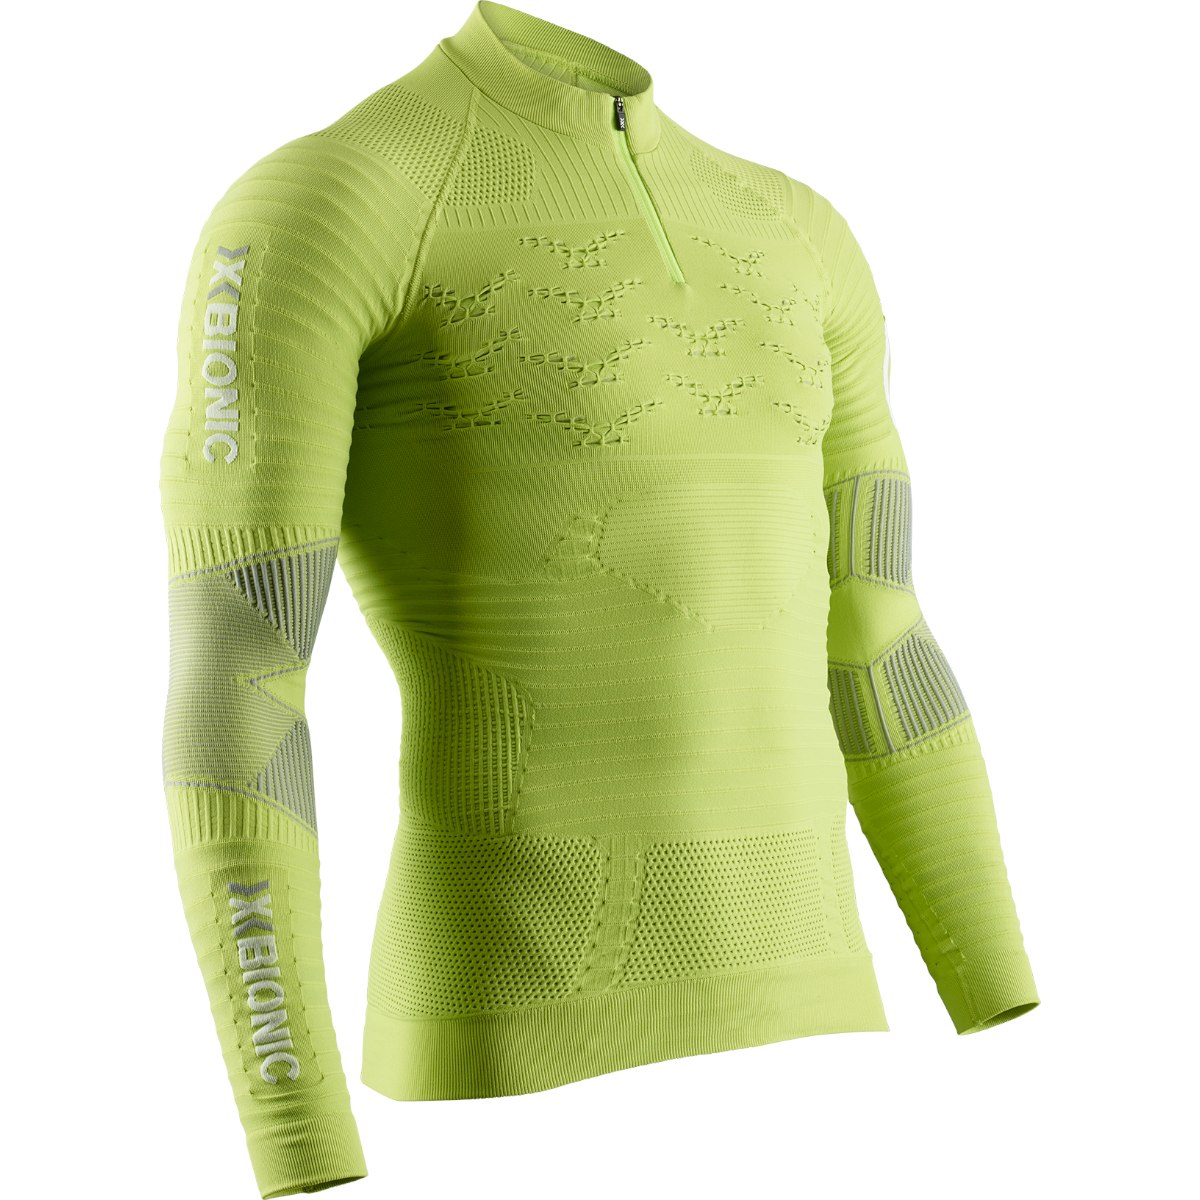 Produktbild von X-Bionic Effektor 4.0 Trail Run Powershirt 1/2 Zip Langarmshirt für Herren - effektor green/arctic white